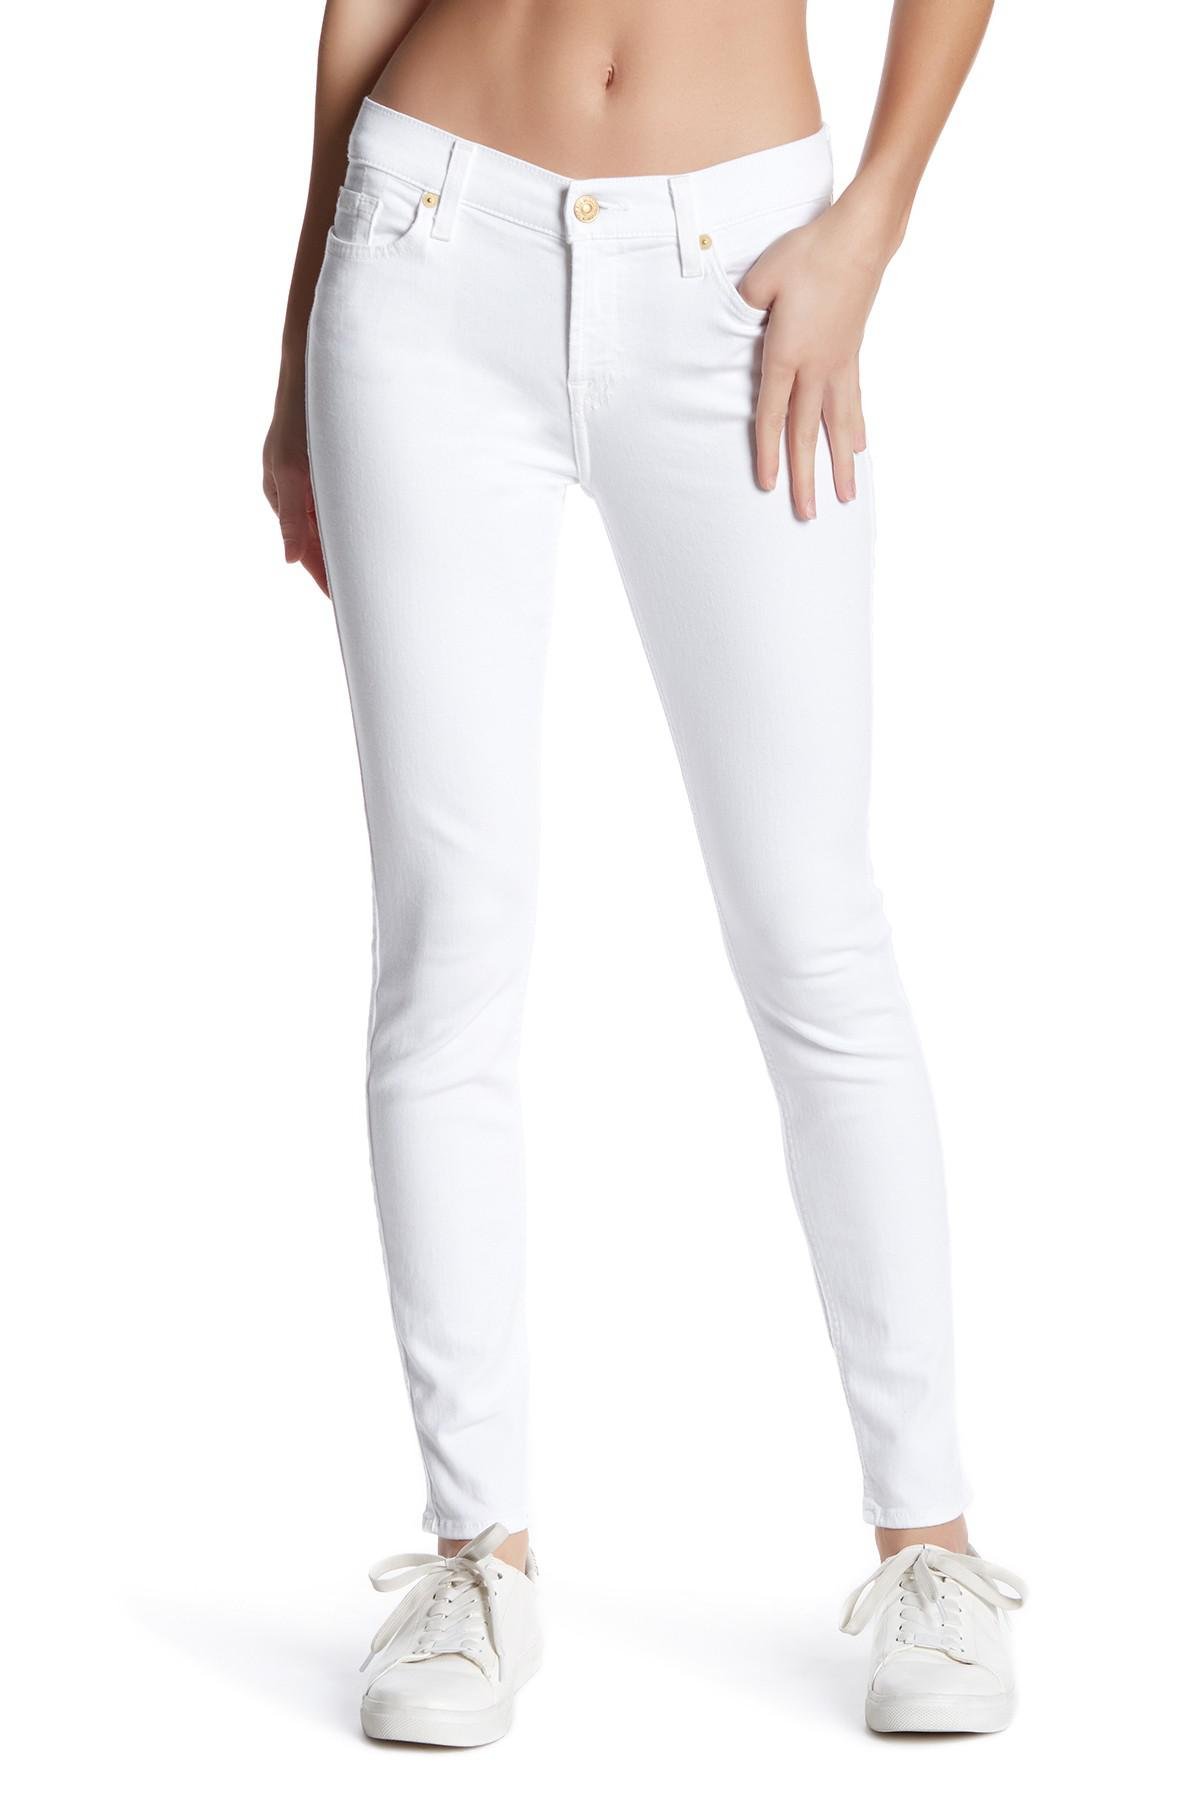 White 7 for all mankind skinny jeans blog.knak.jp